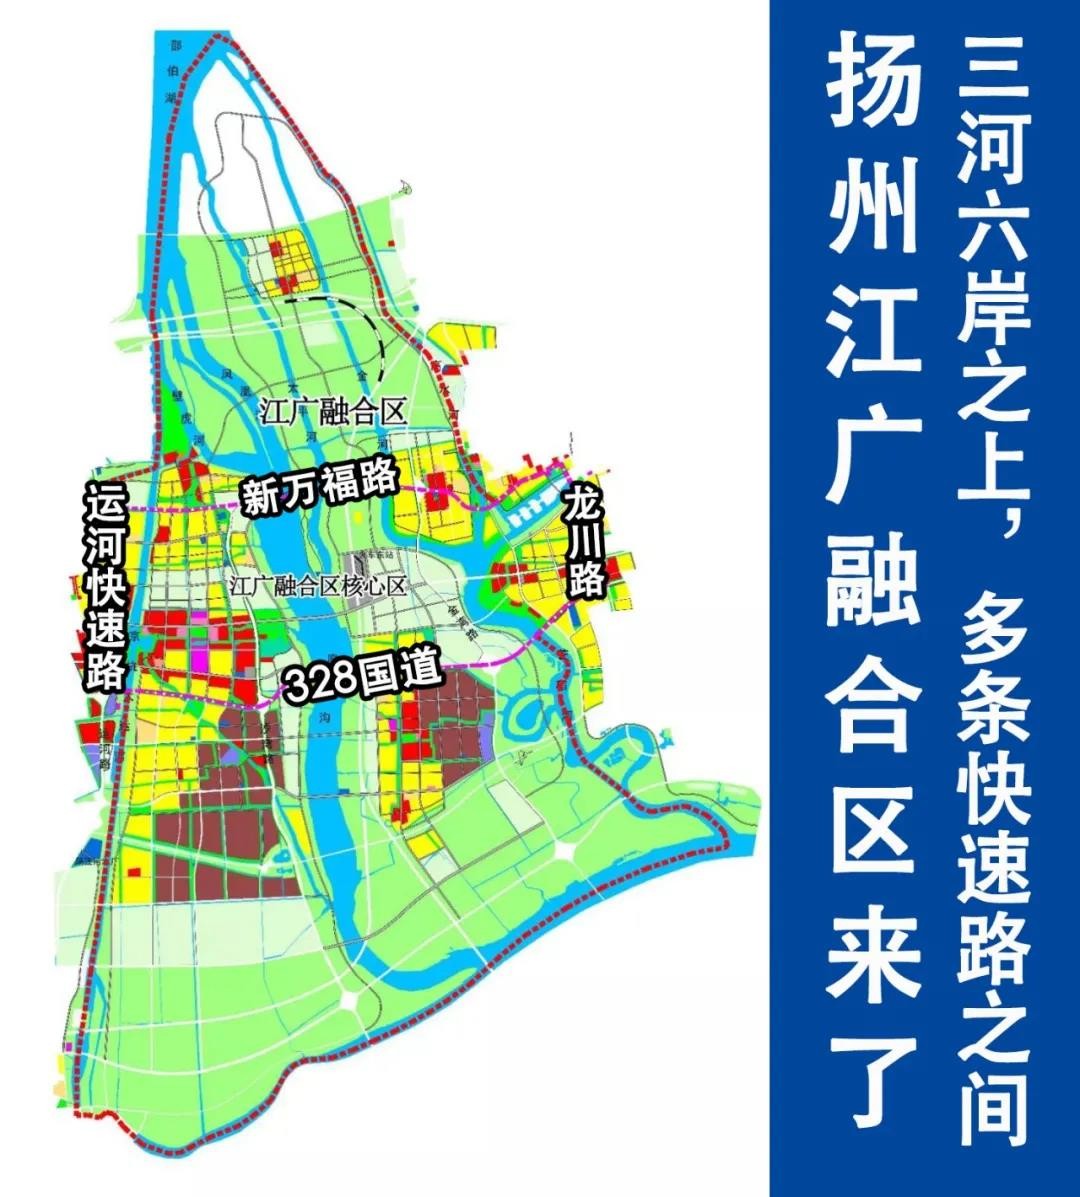 扬州朴席新区规划图图片